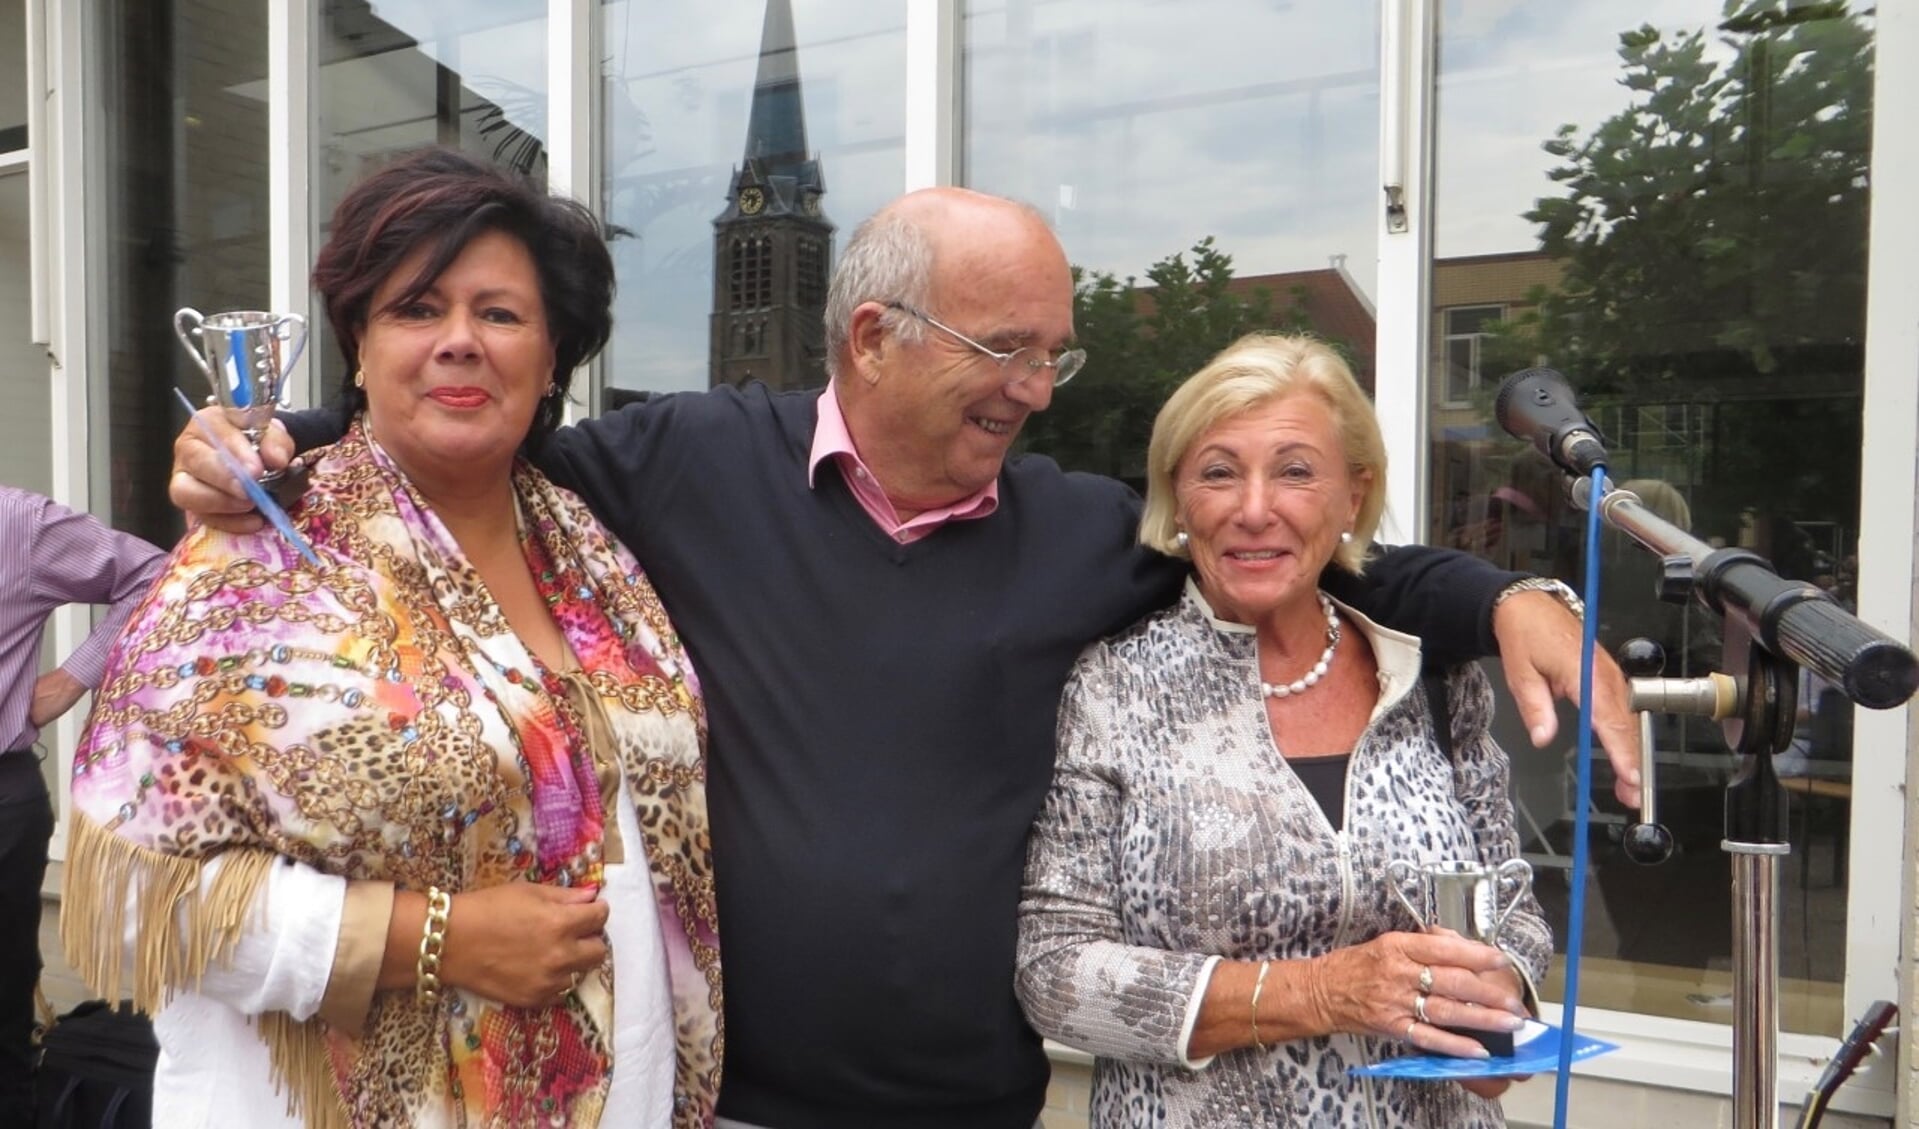 De twee winnaars van 2016: Wim Luijendijk (midden) en Gerda Zonneveld (rechts)